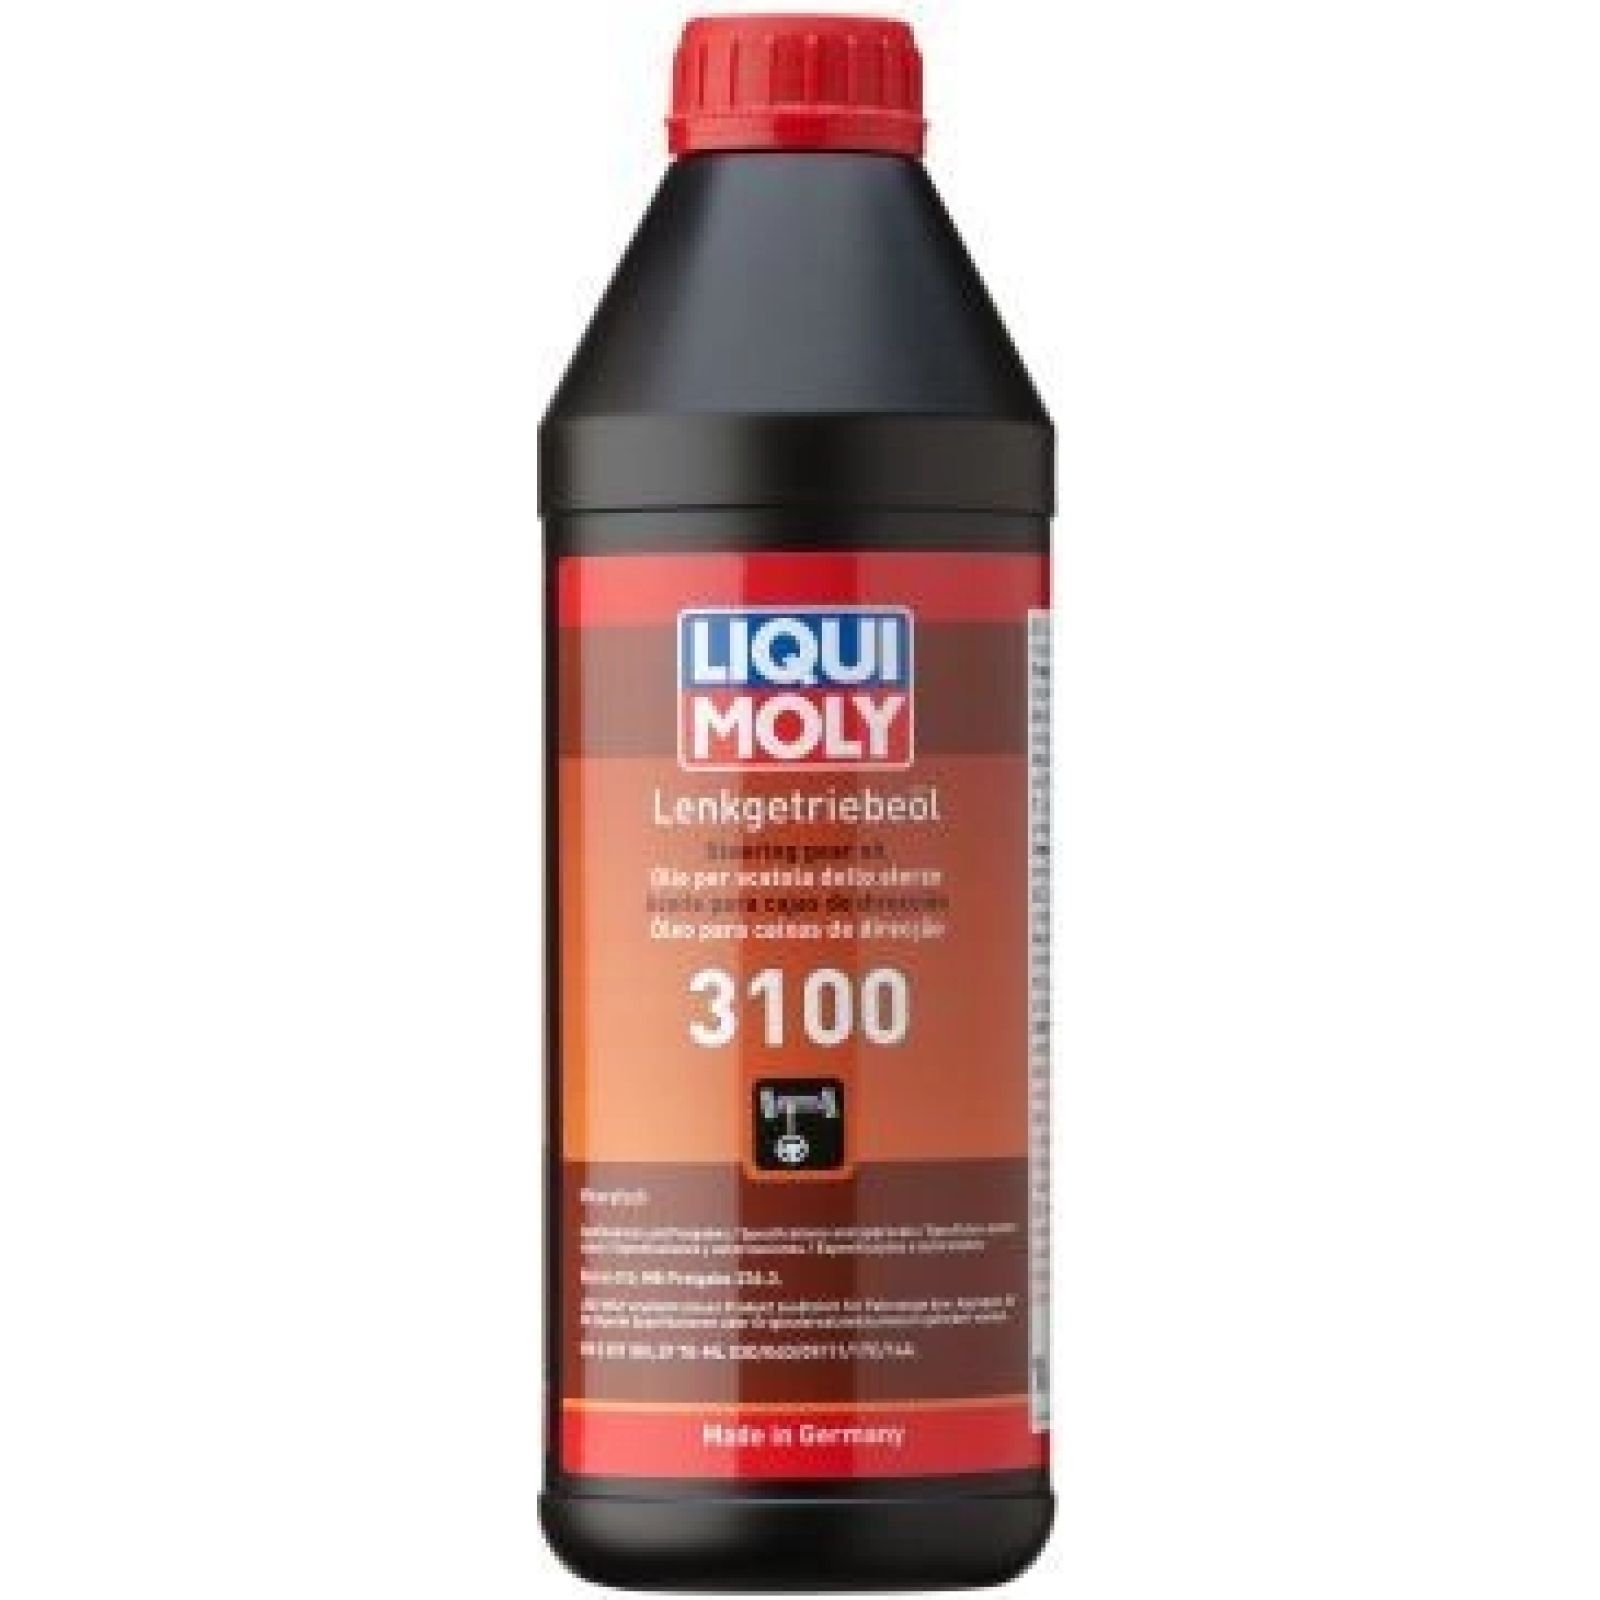 LIQUI MOLY, Servolenkungsöl, Lenkgetriebe-Öl 3100, 1L, Lenkgetriebeöl  3100